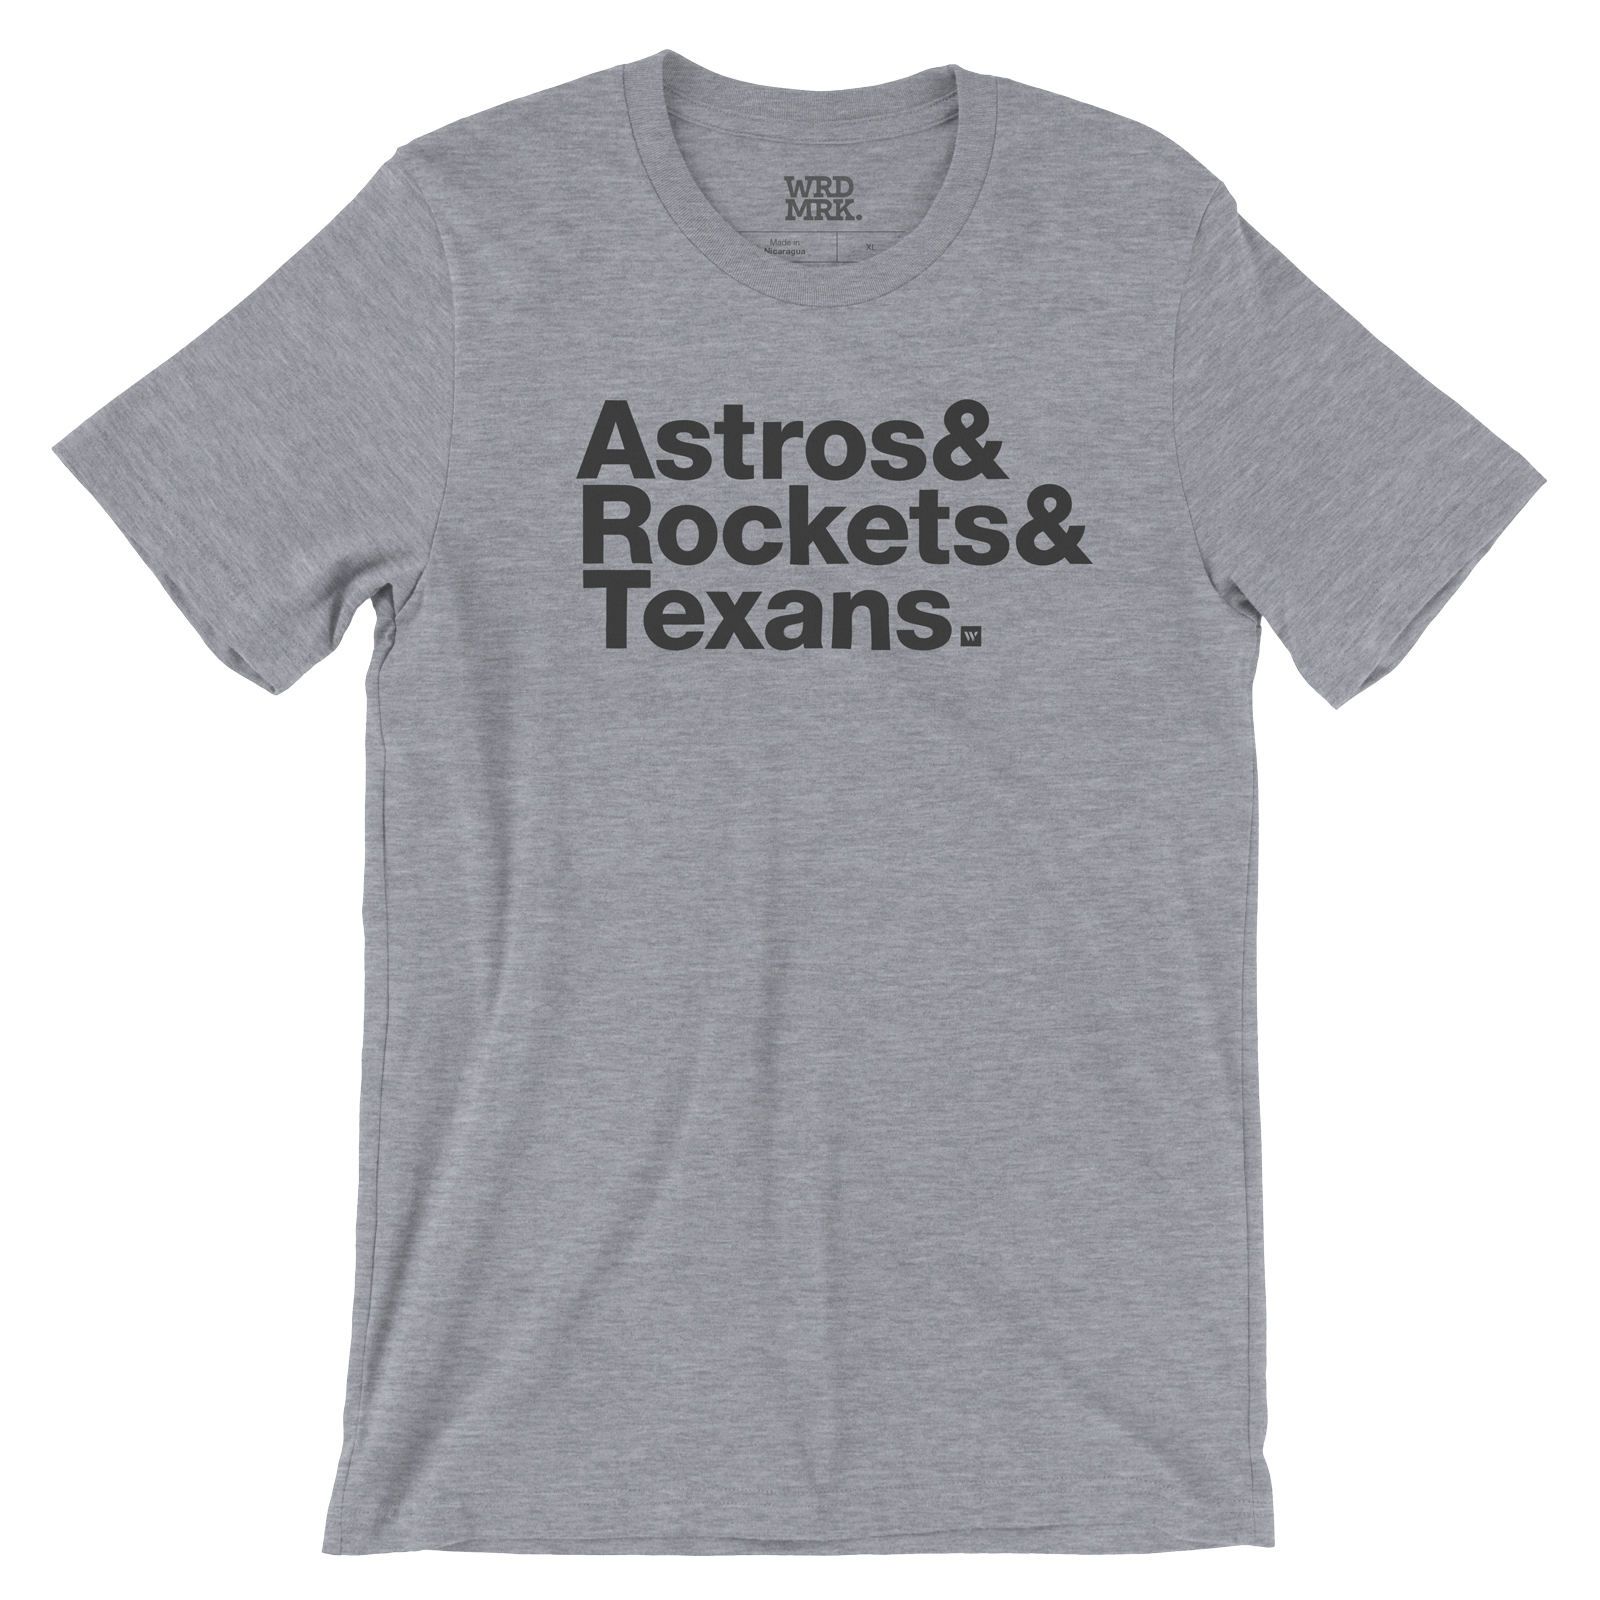 Wrdmrk Astros & Rockets & Texans T-Shirt - Houston Sports Teams - Ampersand Helvetica (Gray Heather, XL)